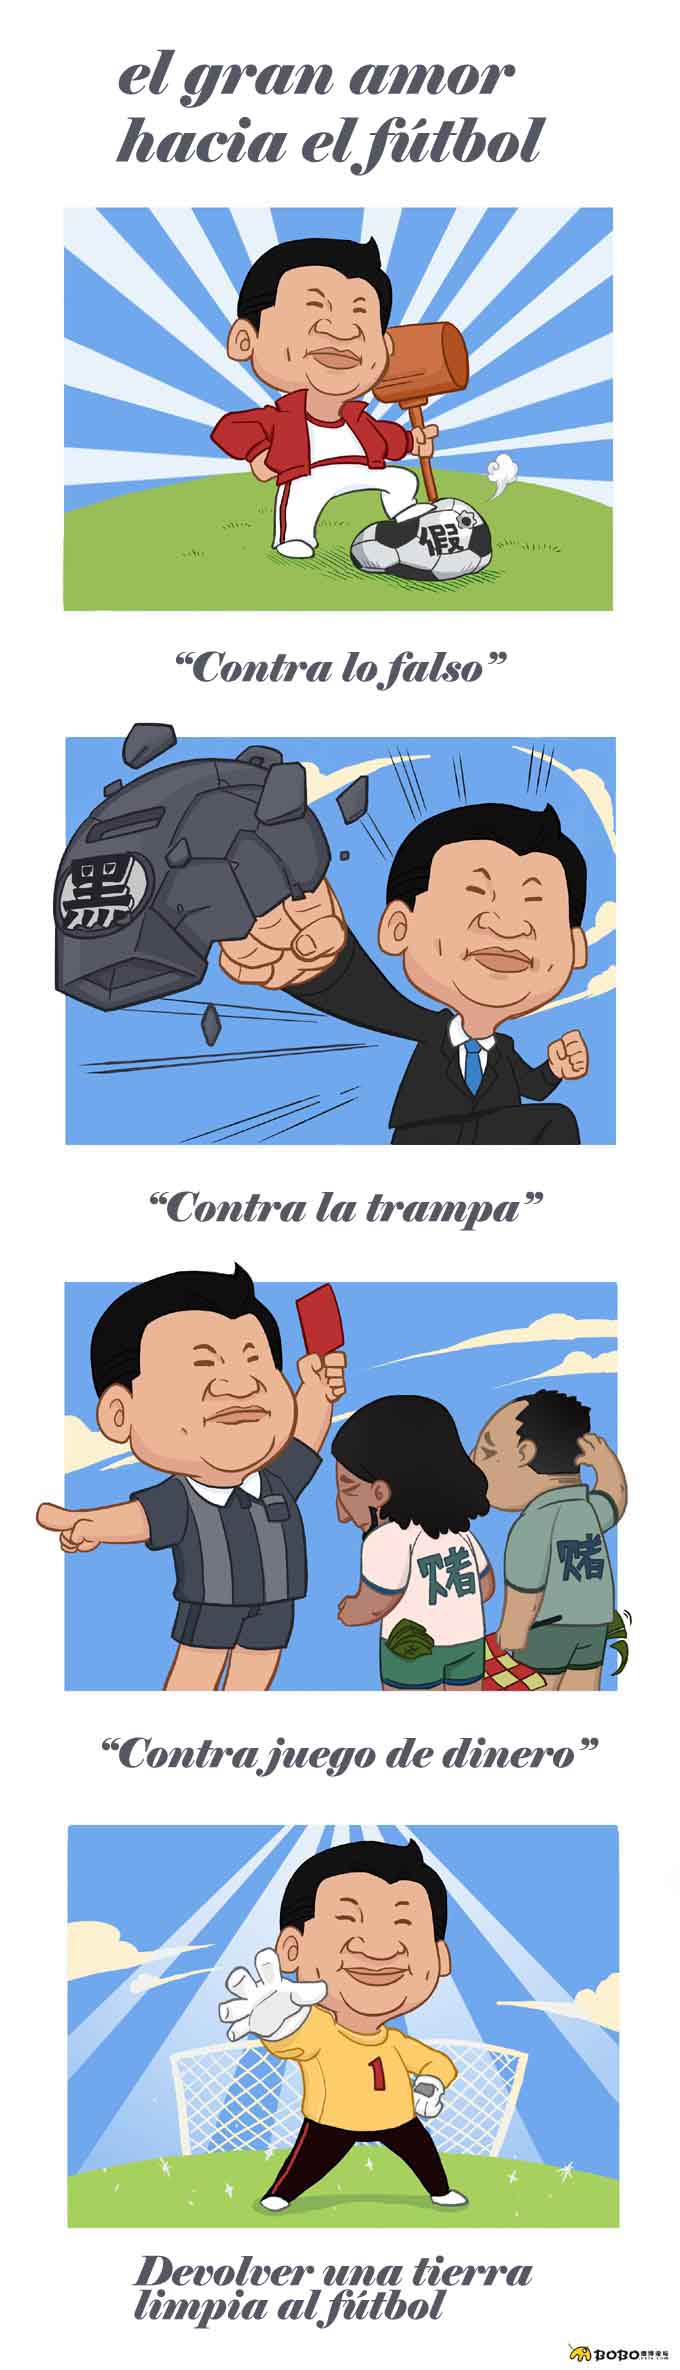 Lindo cómic original de internautas “Dada y el fútbol”